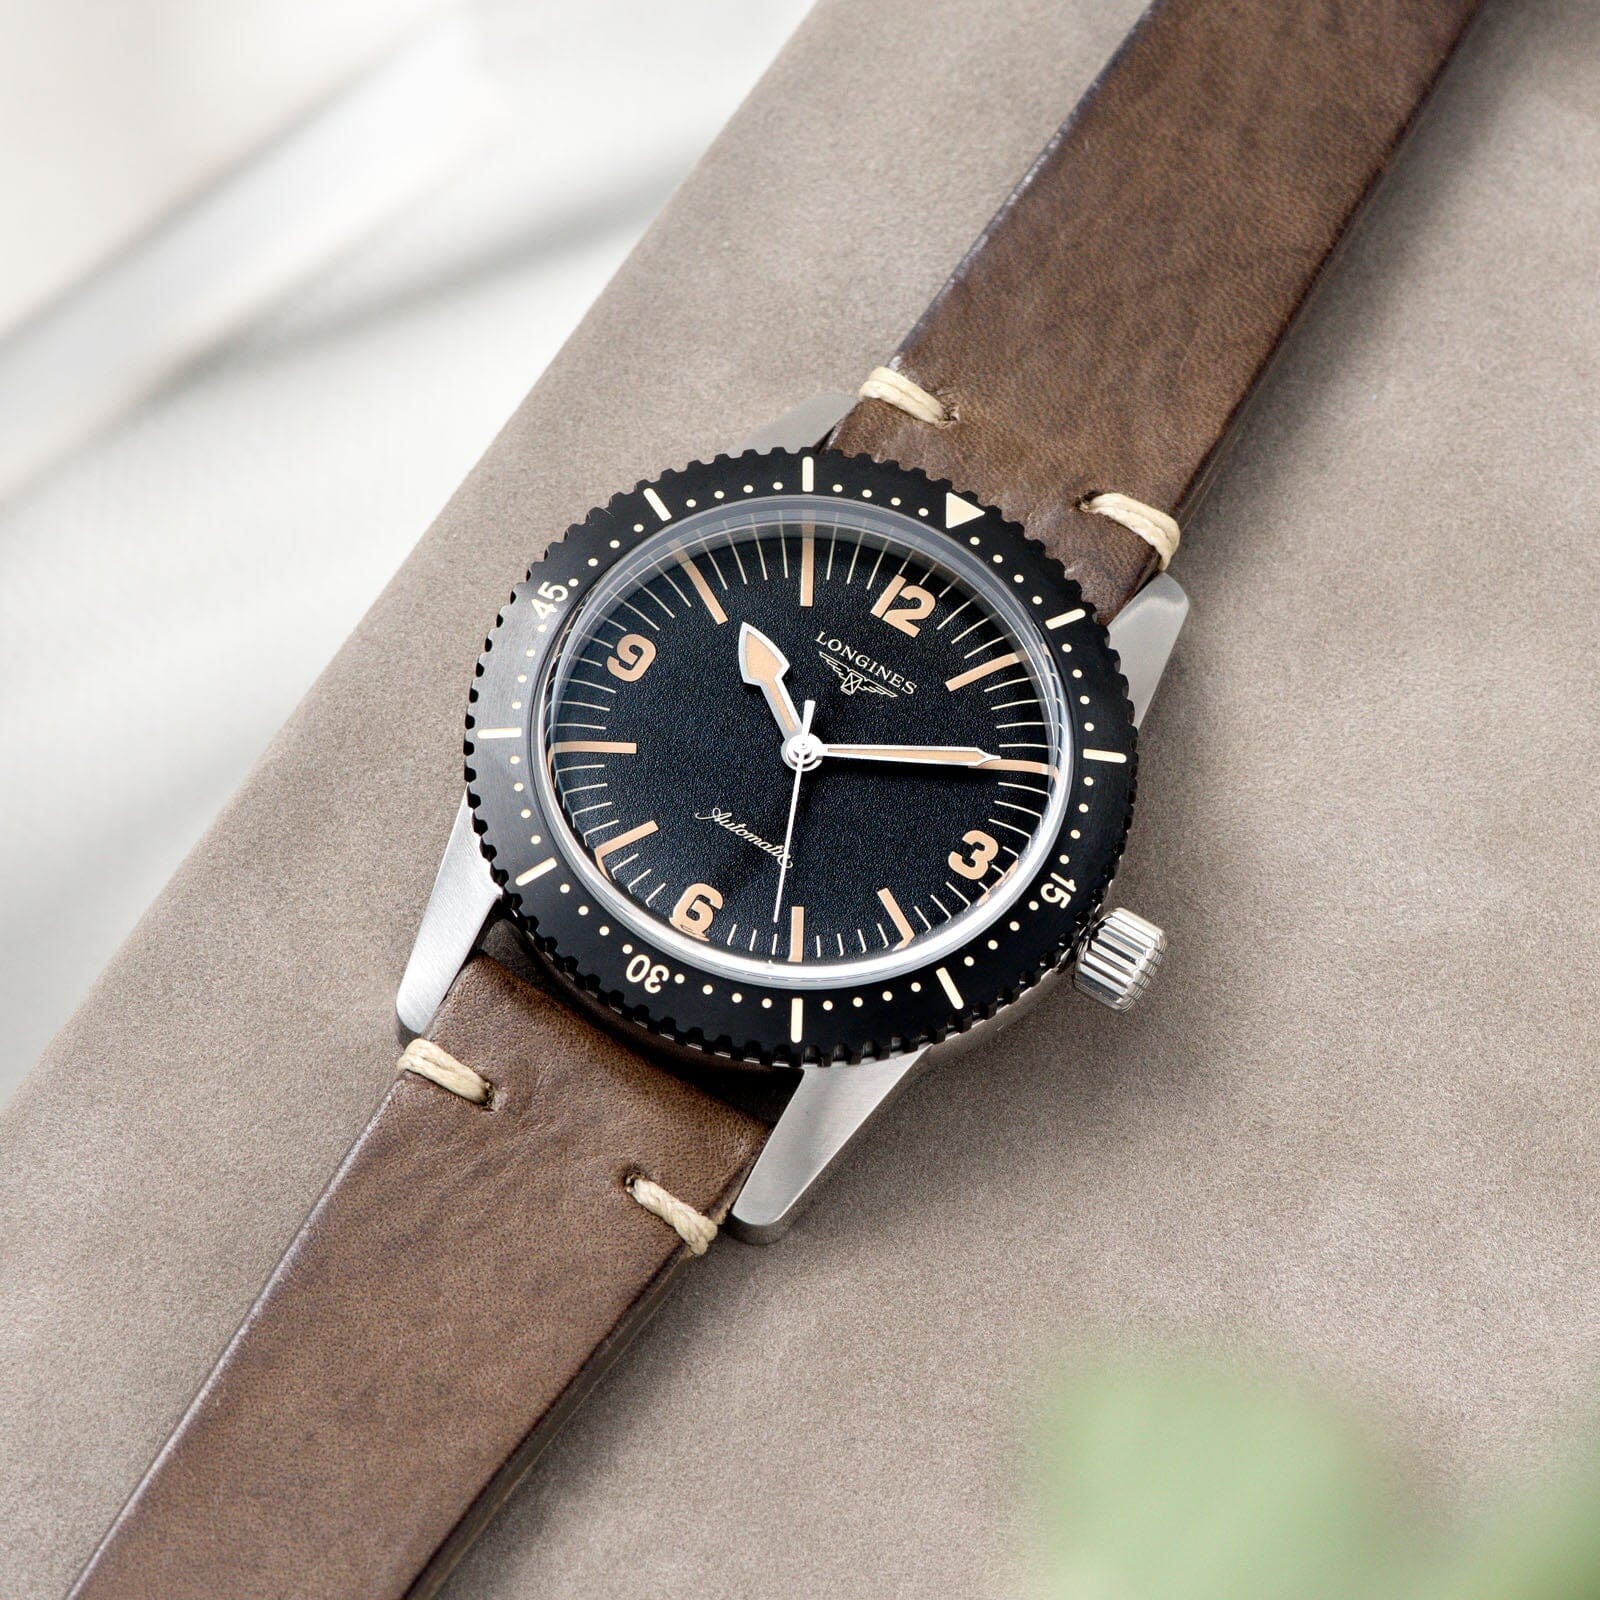 Smokeyjack Grey Leather Watch Strap